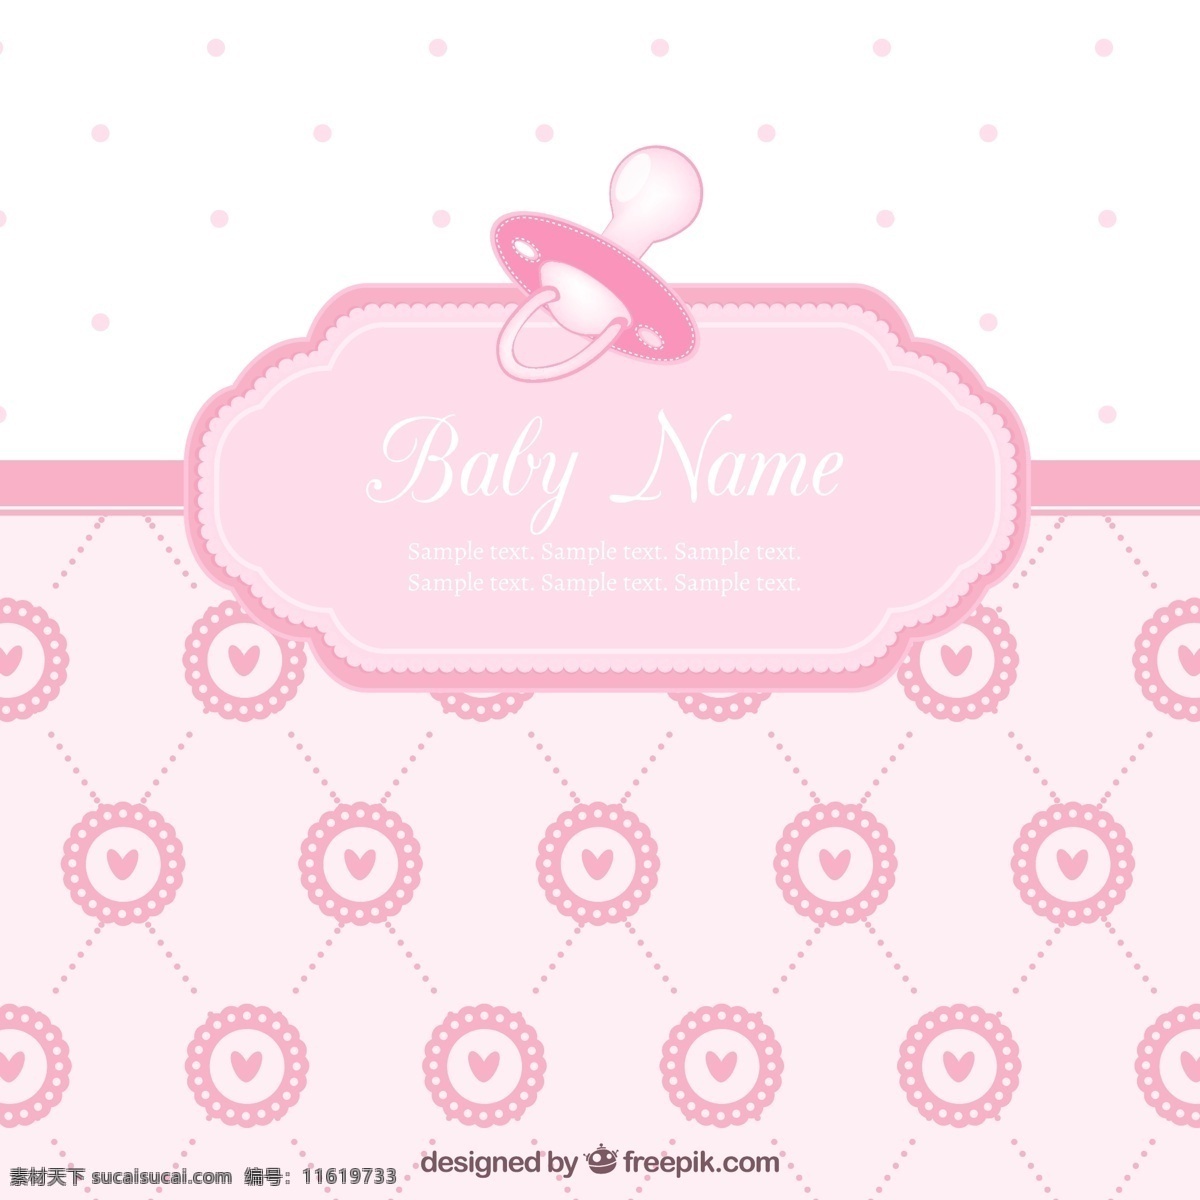 可爱 婴儿 洗澡 卡 女孩 聚会 邀请卡 婴儿淋浴 模板 粉色 壁纸 庆典 庆祝 聚会的邀请 出生 可爱的小女孩 奶嘴 新出生的 白色